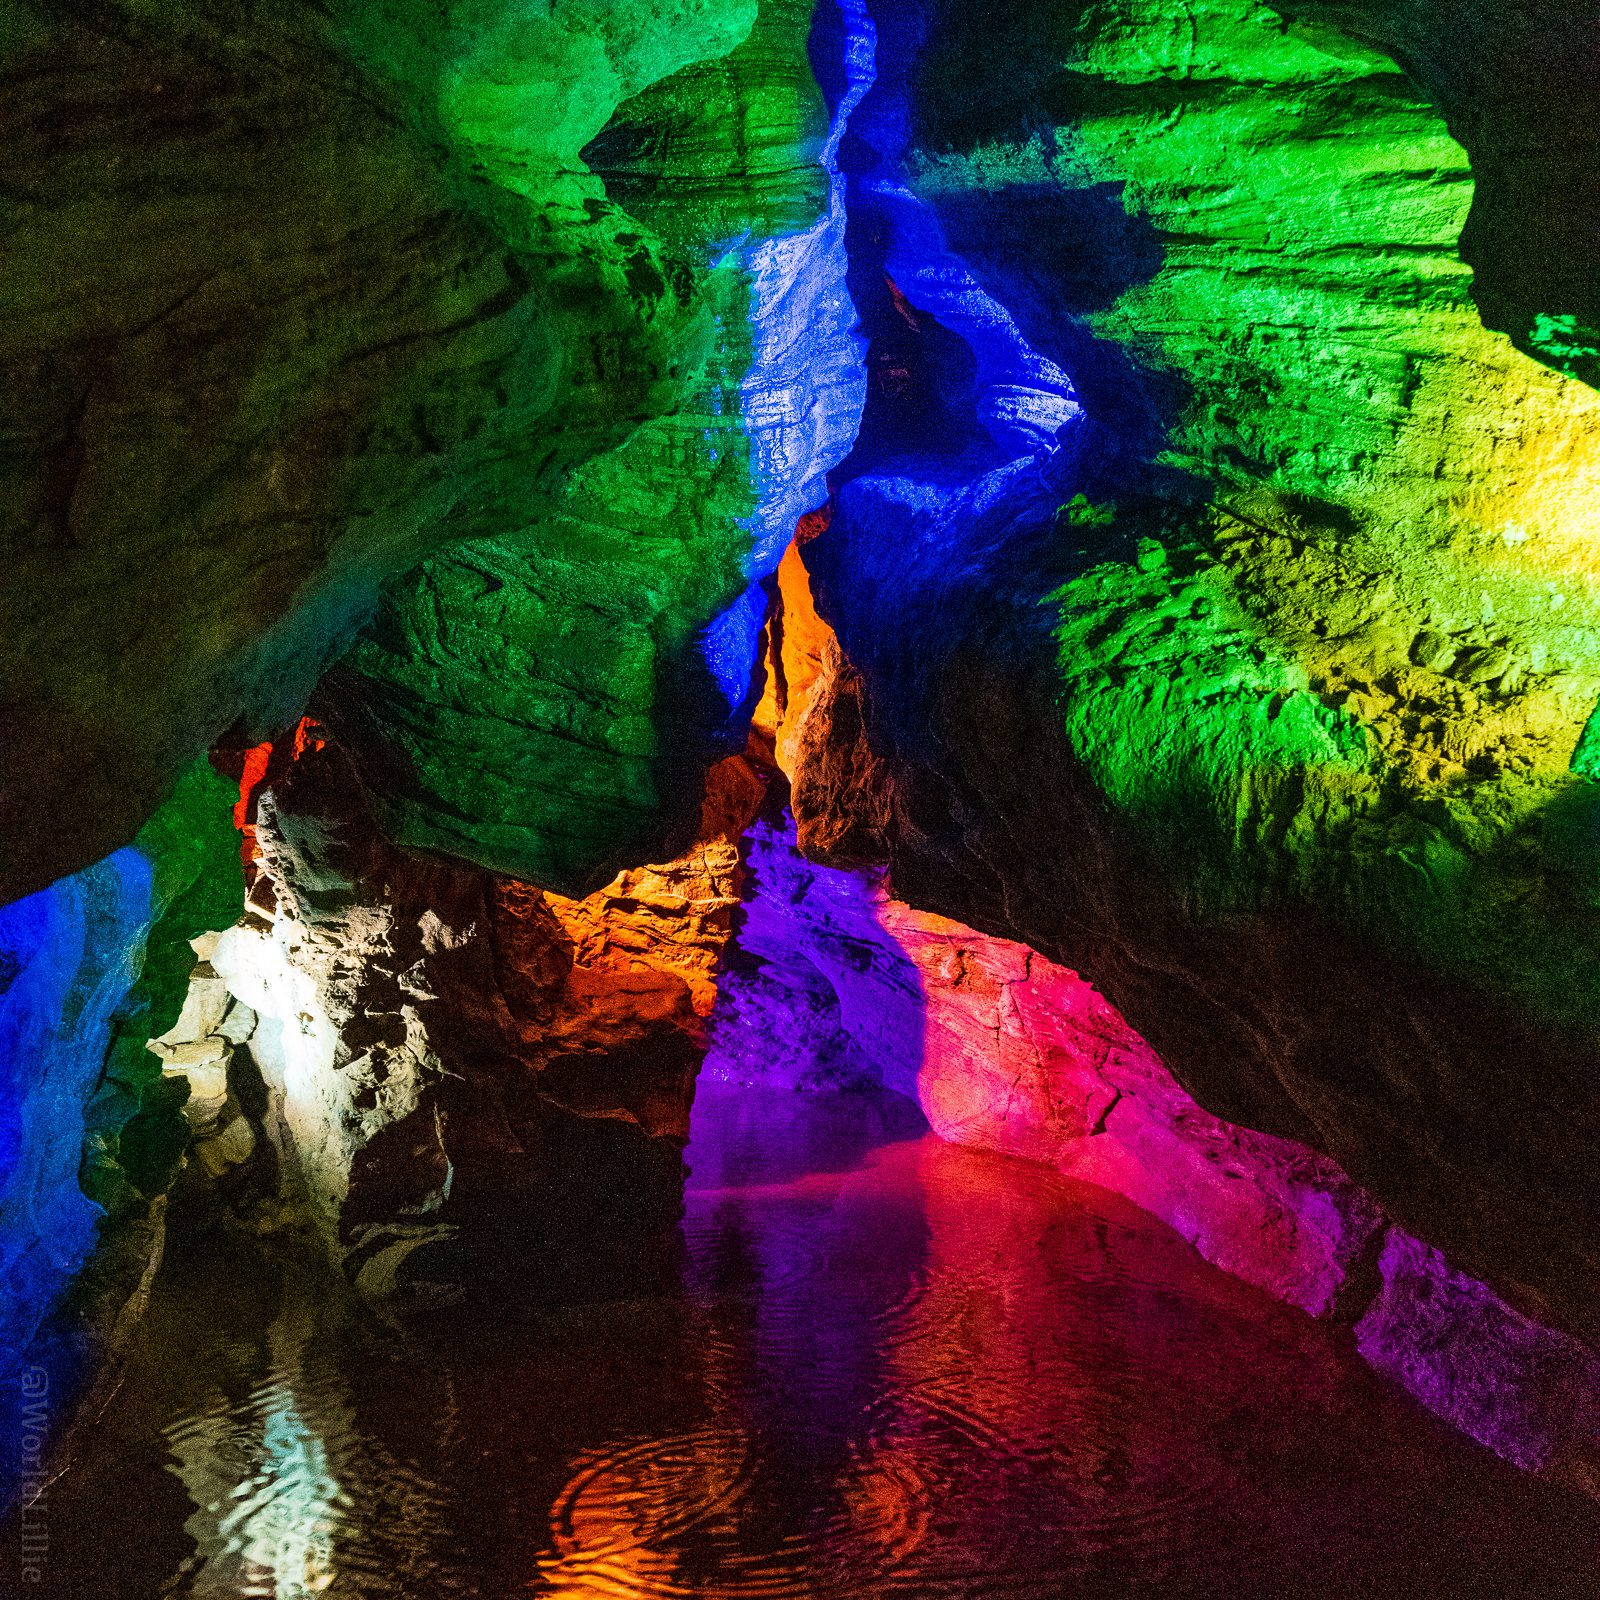 laurel caverns tours prices